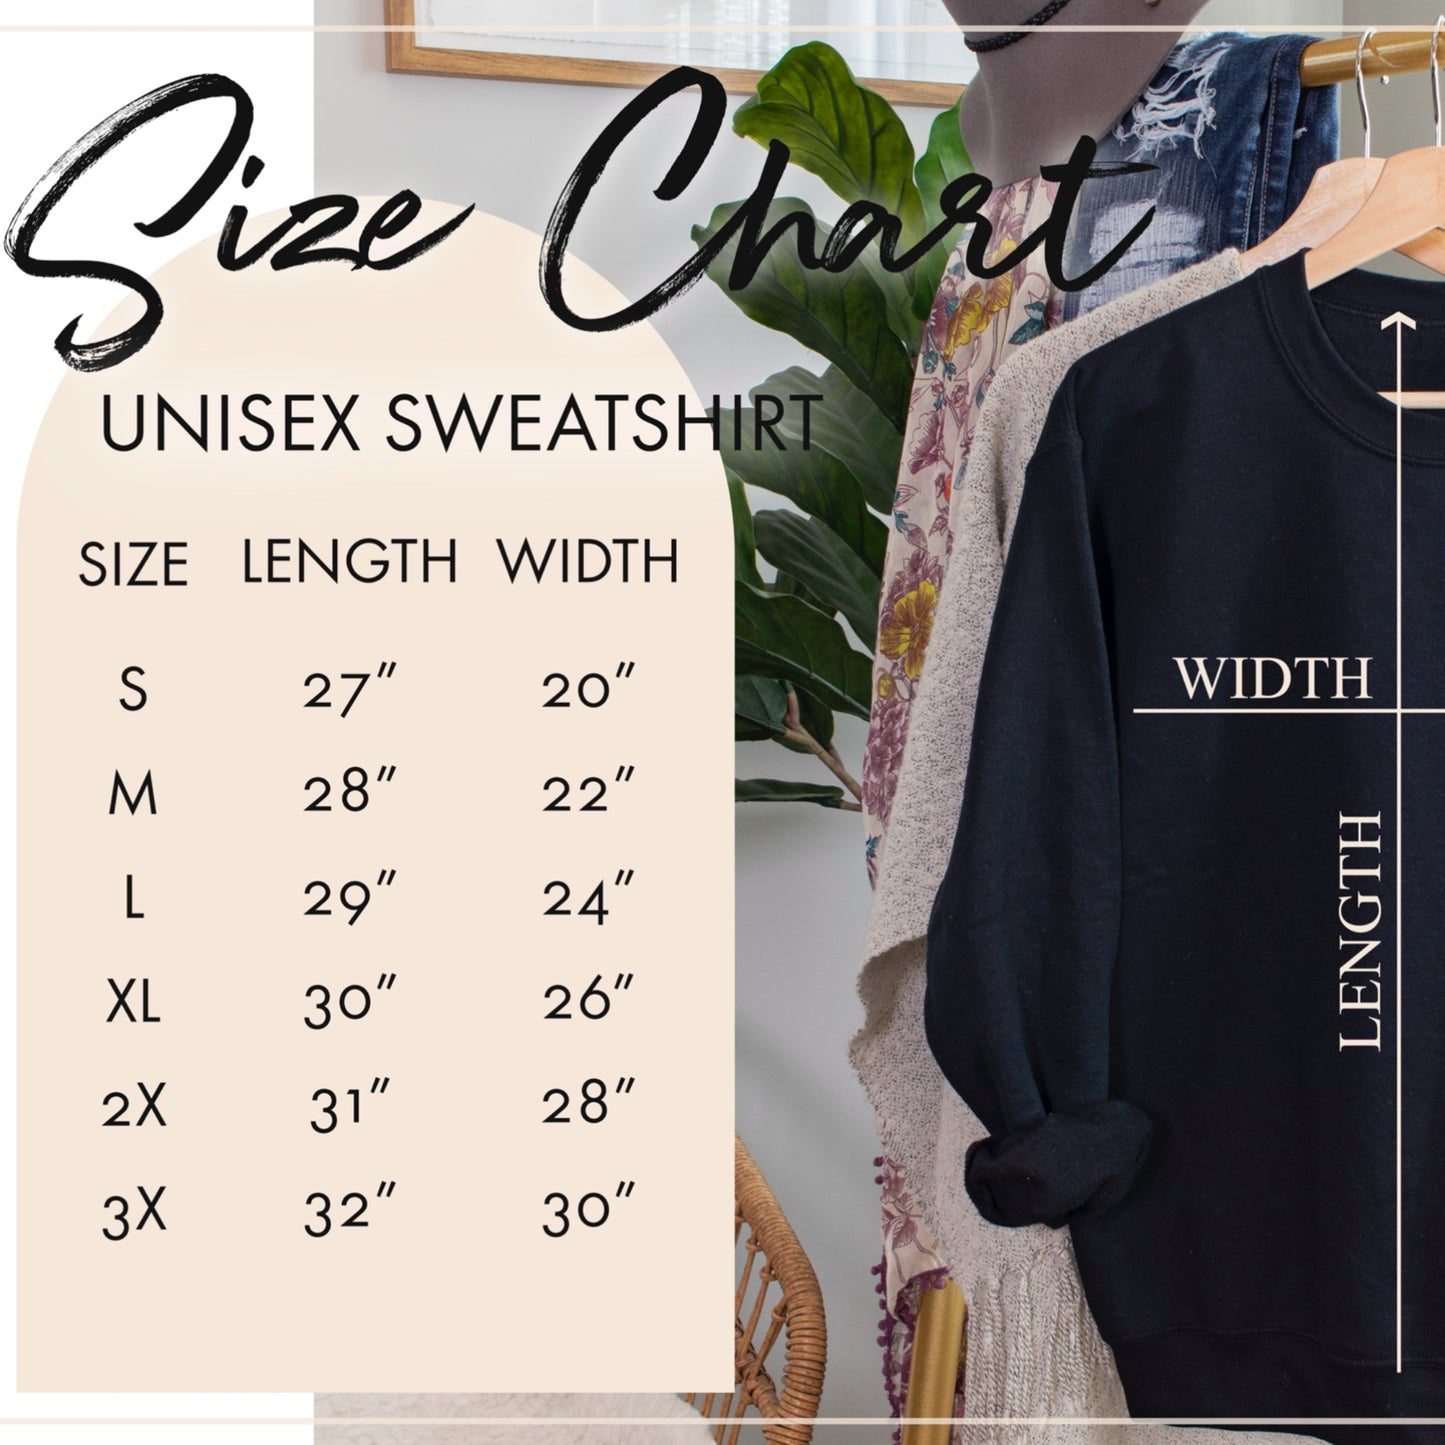 Unisex Crewneck Sweatshirt Sizing Chart